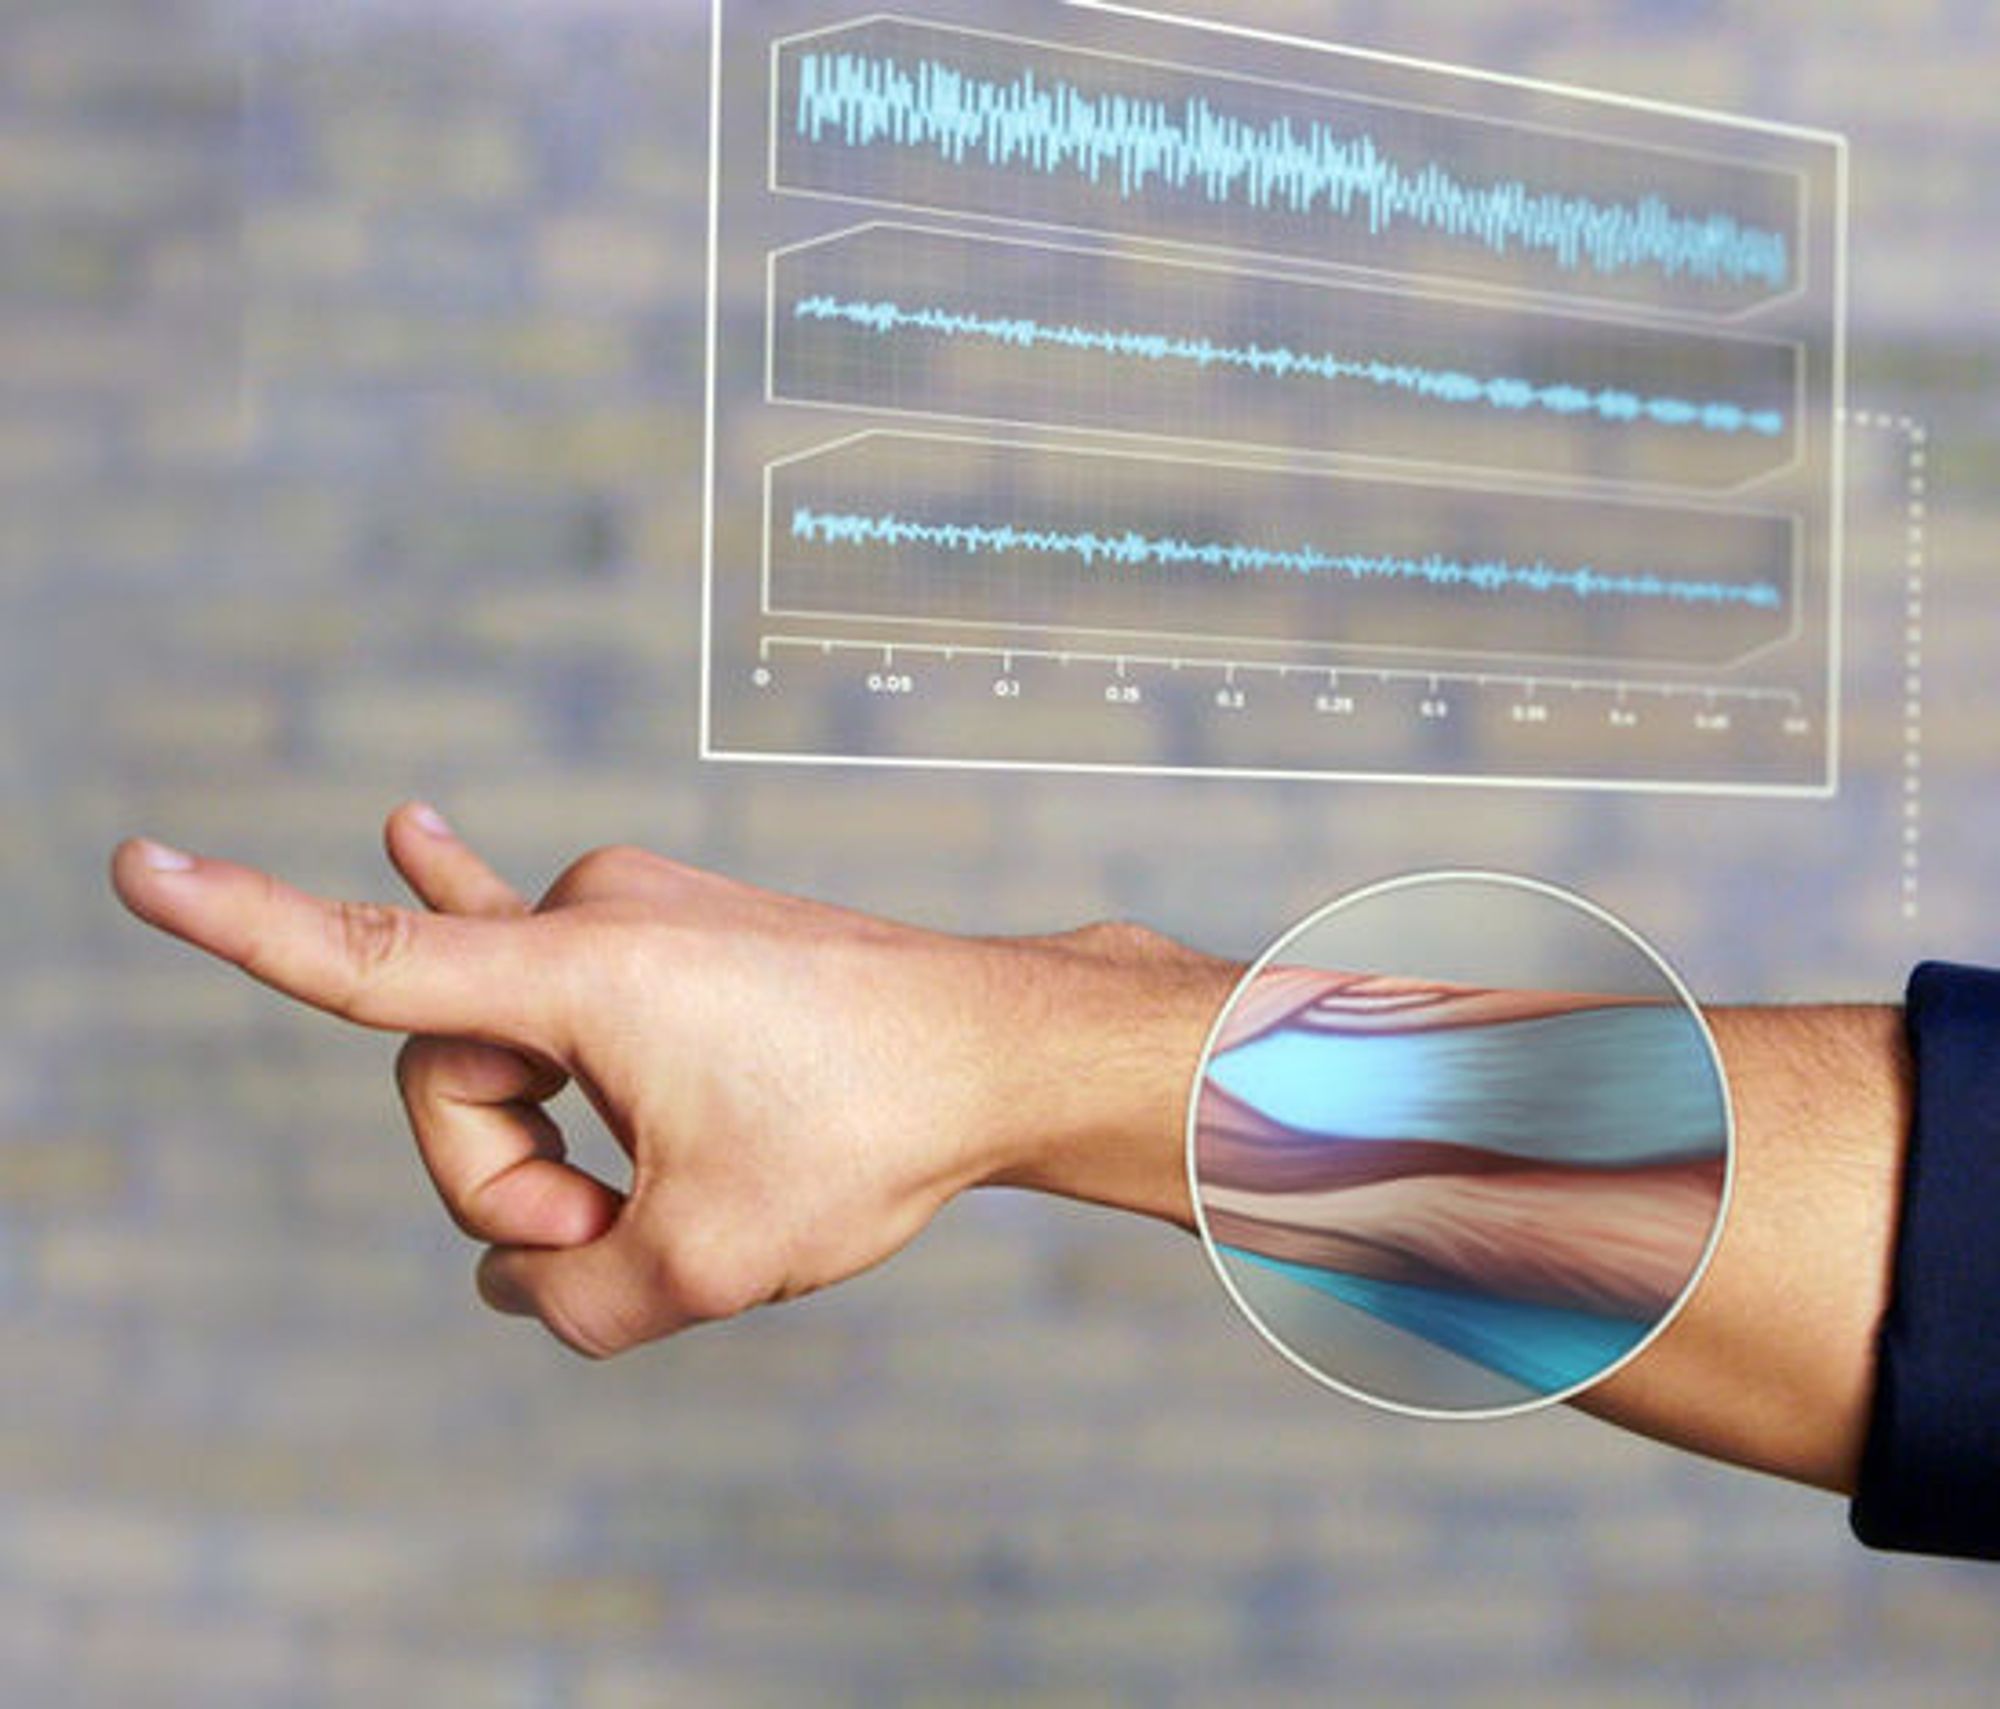 Ved hjelp av sensorer som registrerer elektrisk muskelaktivitet, kan MYO detektere hvilke hånd- og fingerbevegelser brukeren utfører. Dette kan brukes til å styre alt fra tradisjonelle dataprogrammer til kjøretøy.